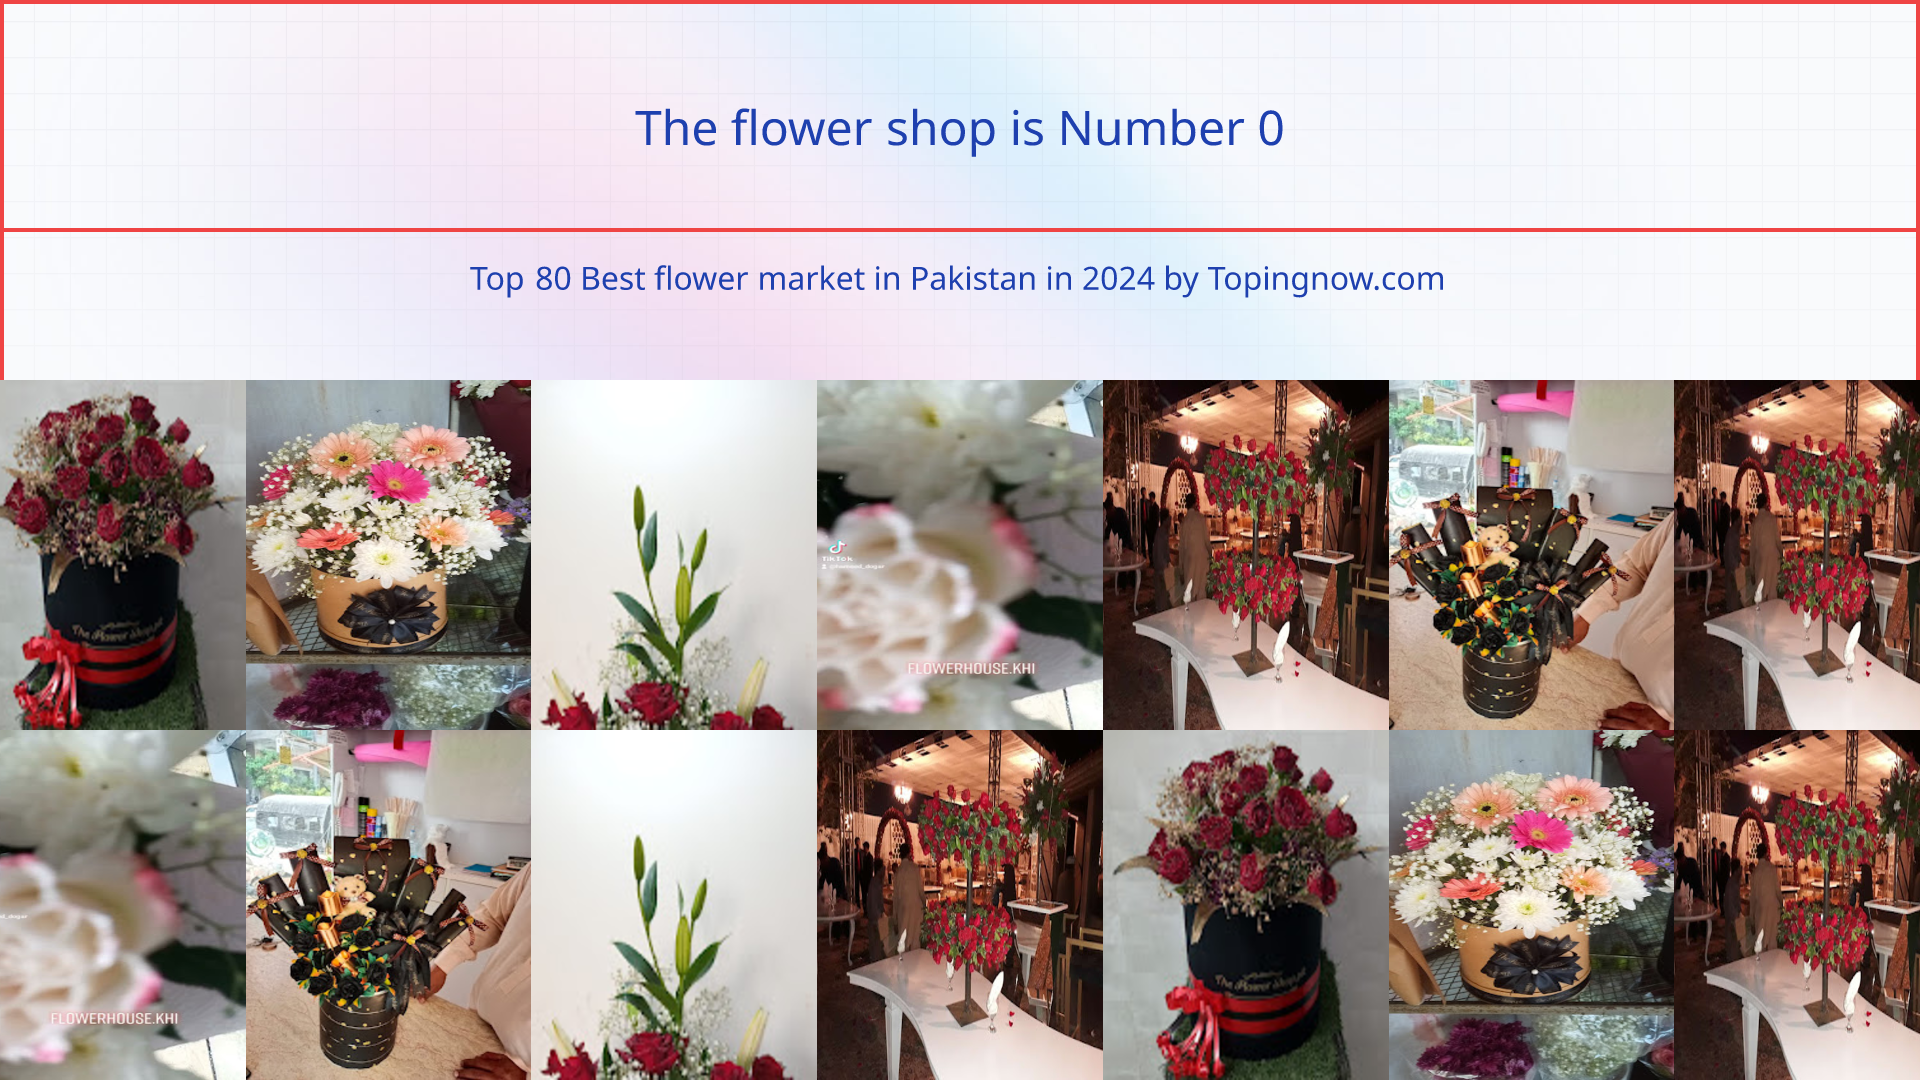 The flower shop: Top 80 Best flower market in Pakistan in 2024